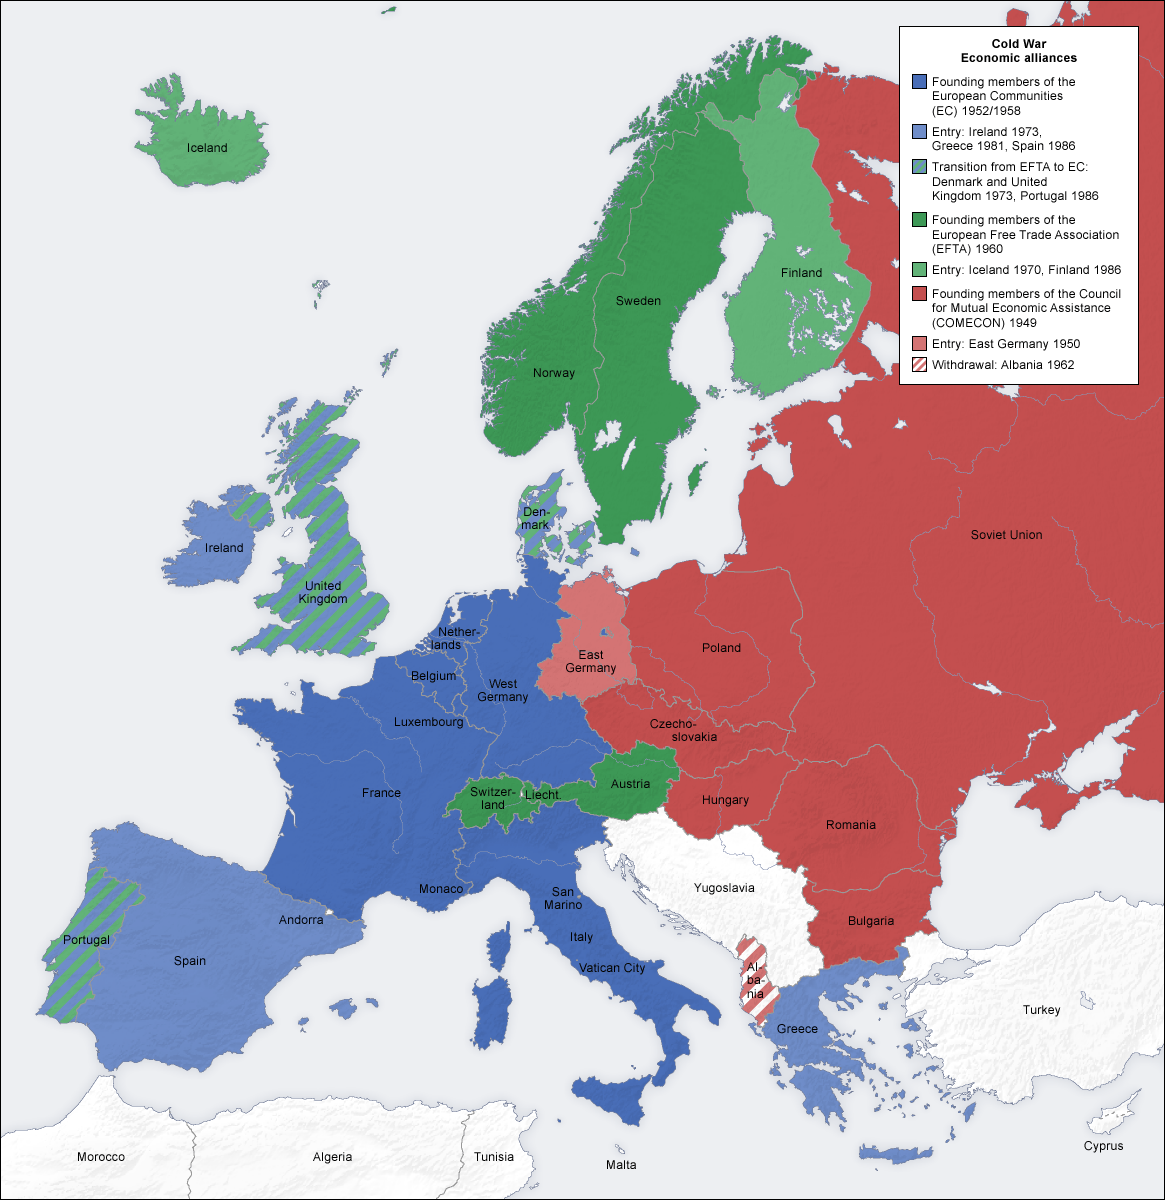 582px-cold_war_europe_economic_alliances_map_en